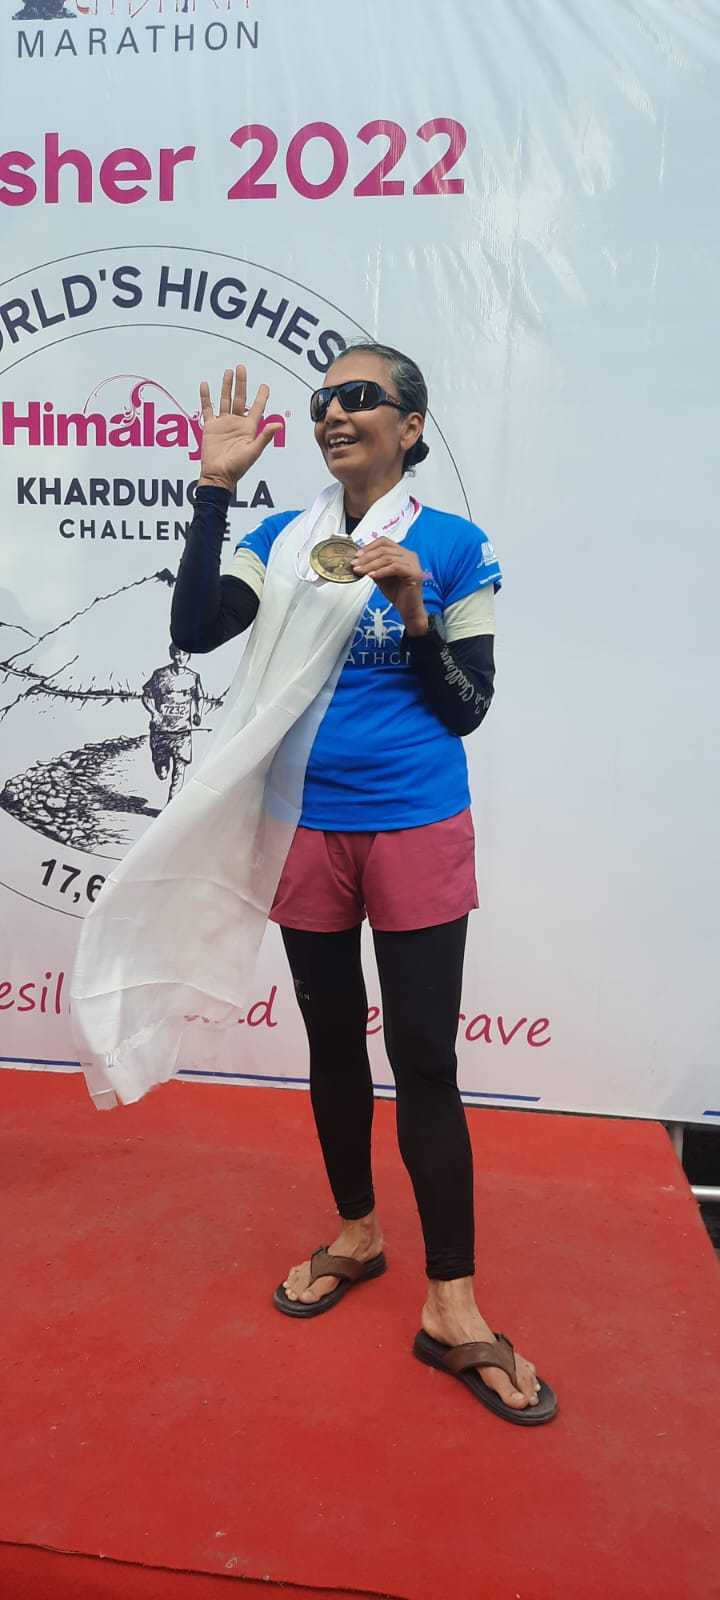 Pushpa Keya Bhatt setelah menyelesaikan tantangan Khardung La di mana dia berlari 72 km